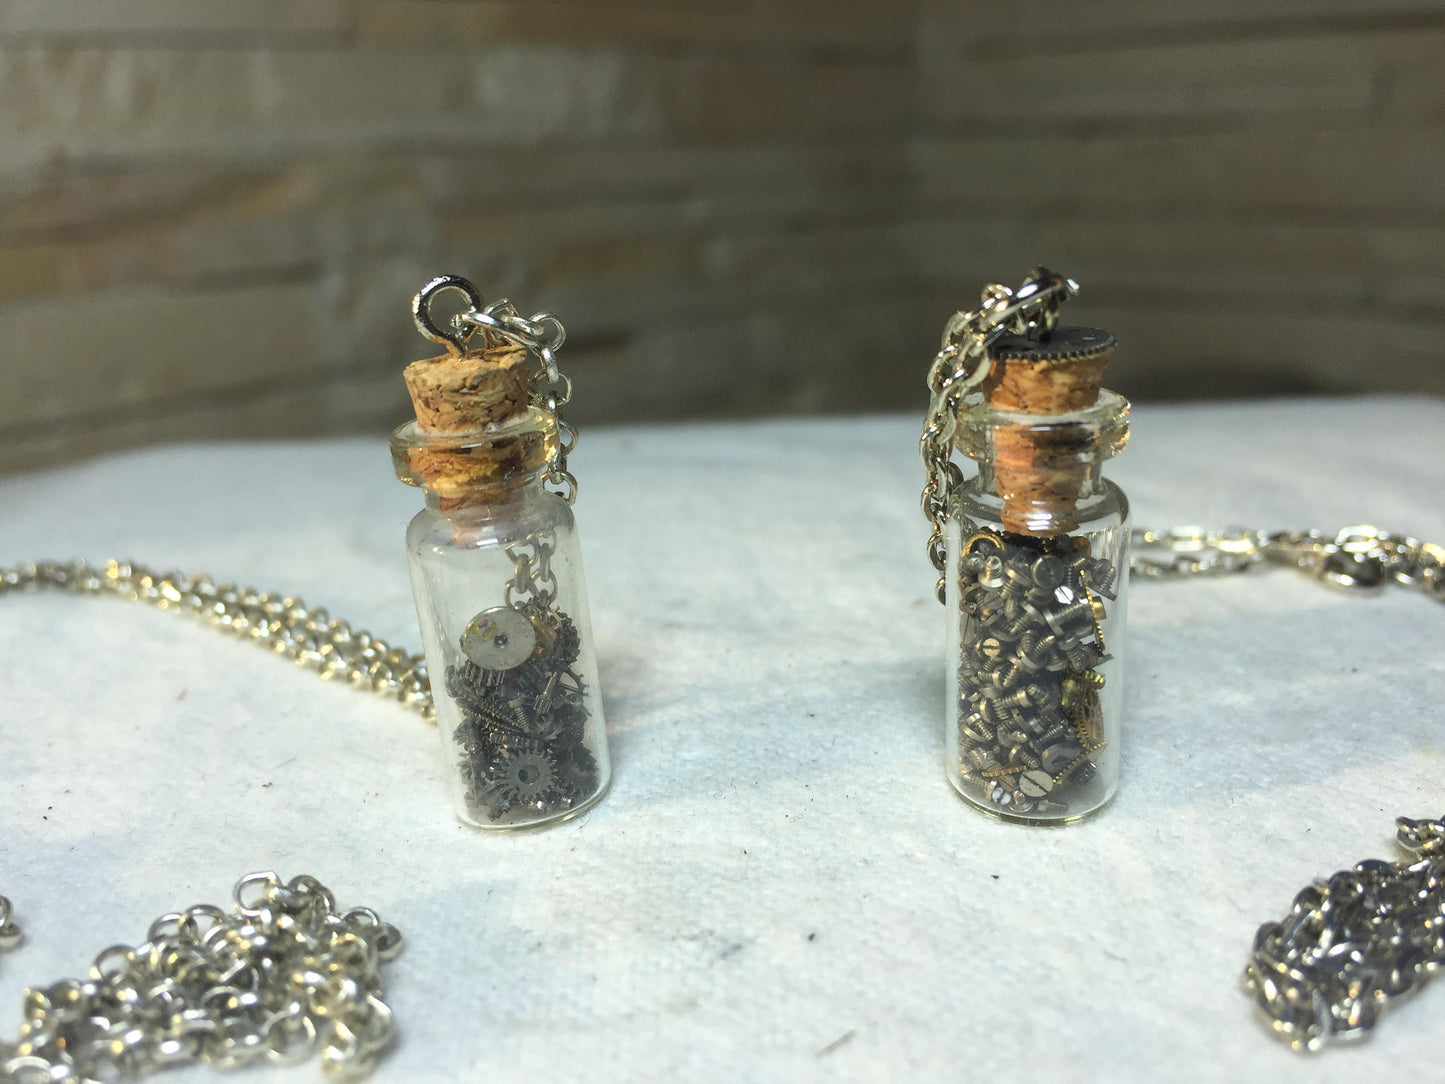 Two steampunk gear bottle necklaces, steampunk pendant, vial pendant, steampunk glass vial, steampunk bottle, steampunk necklace,micro gears